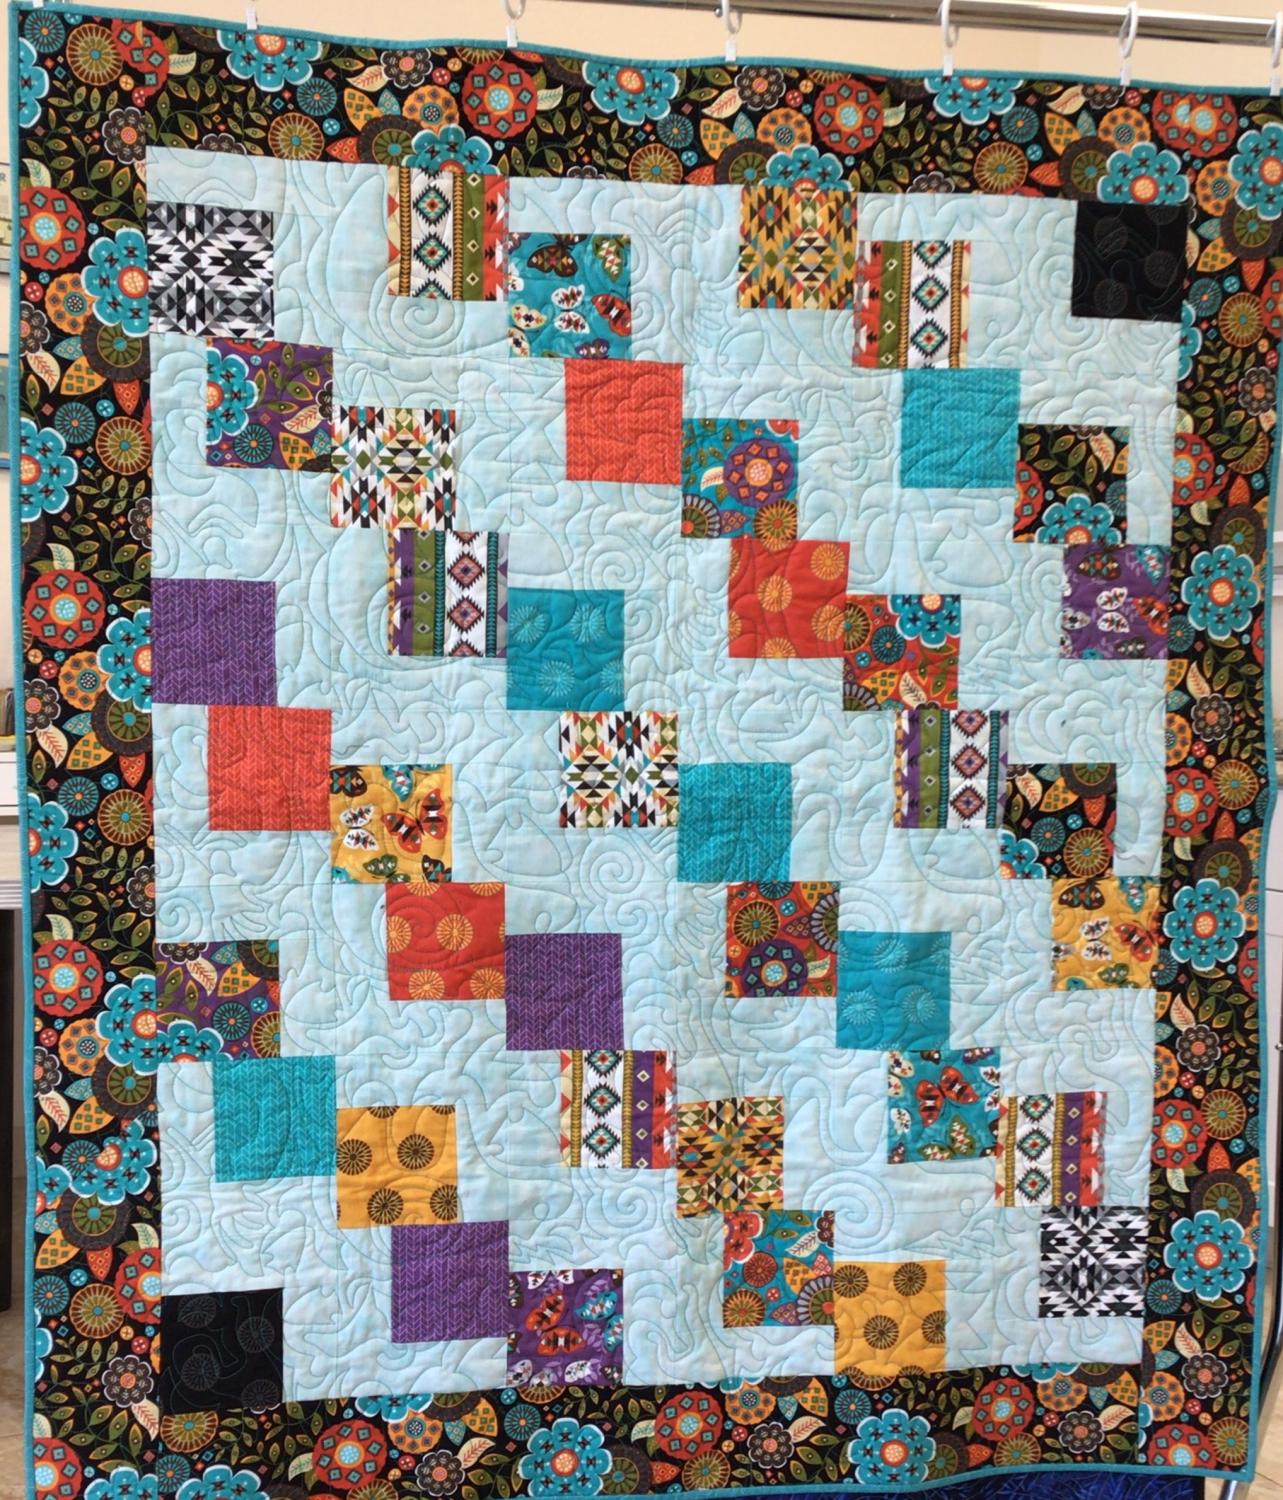 Beautiful handmade quilt using a 5